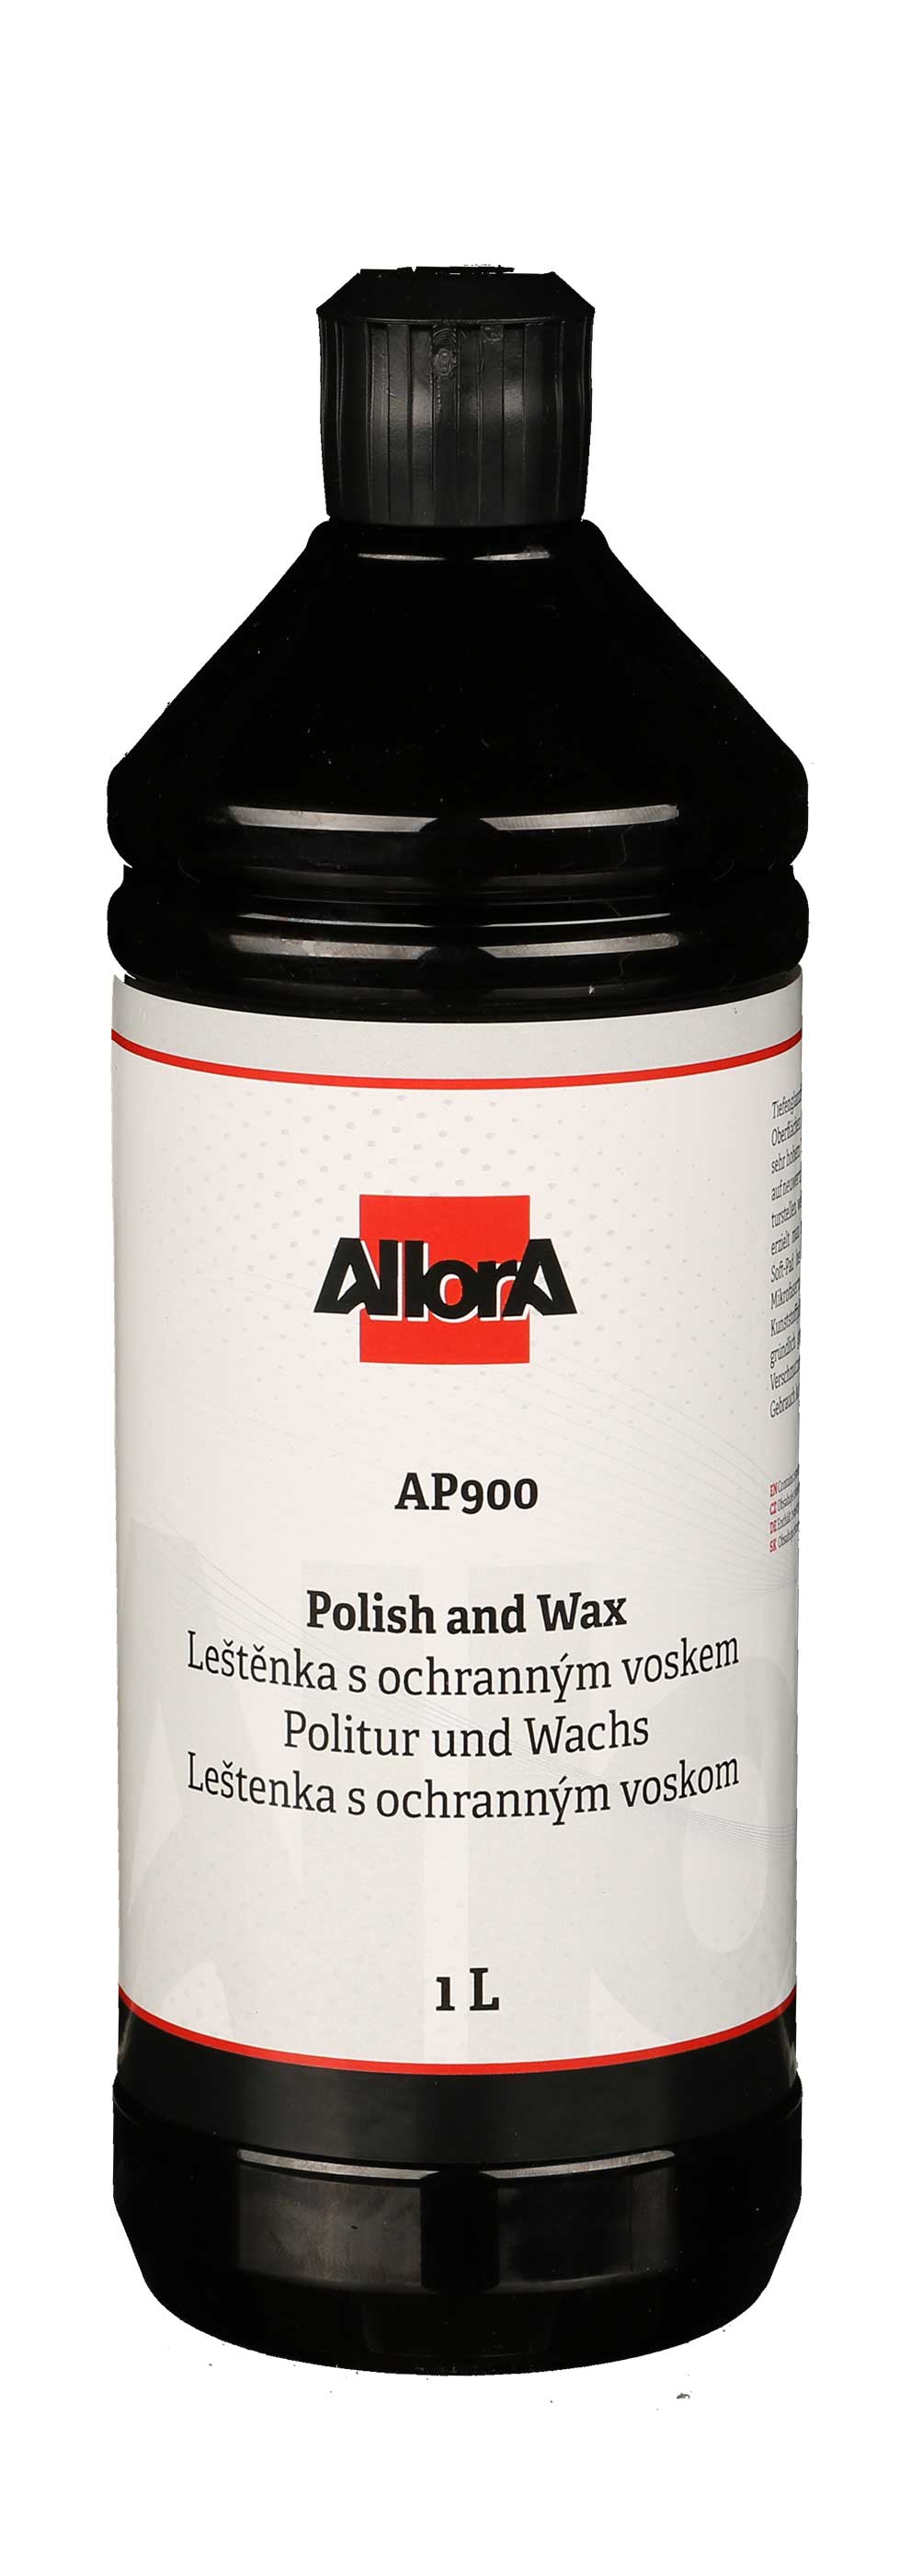 AllorA Polish und Wax Politur AP900